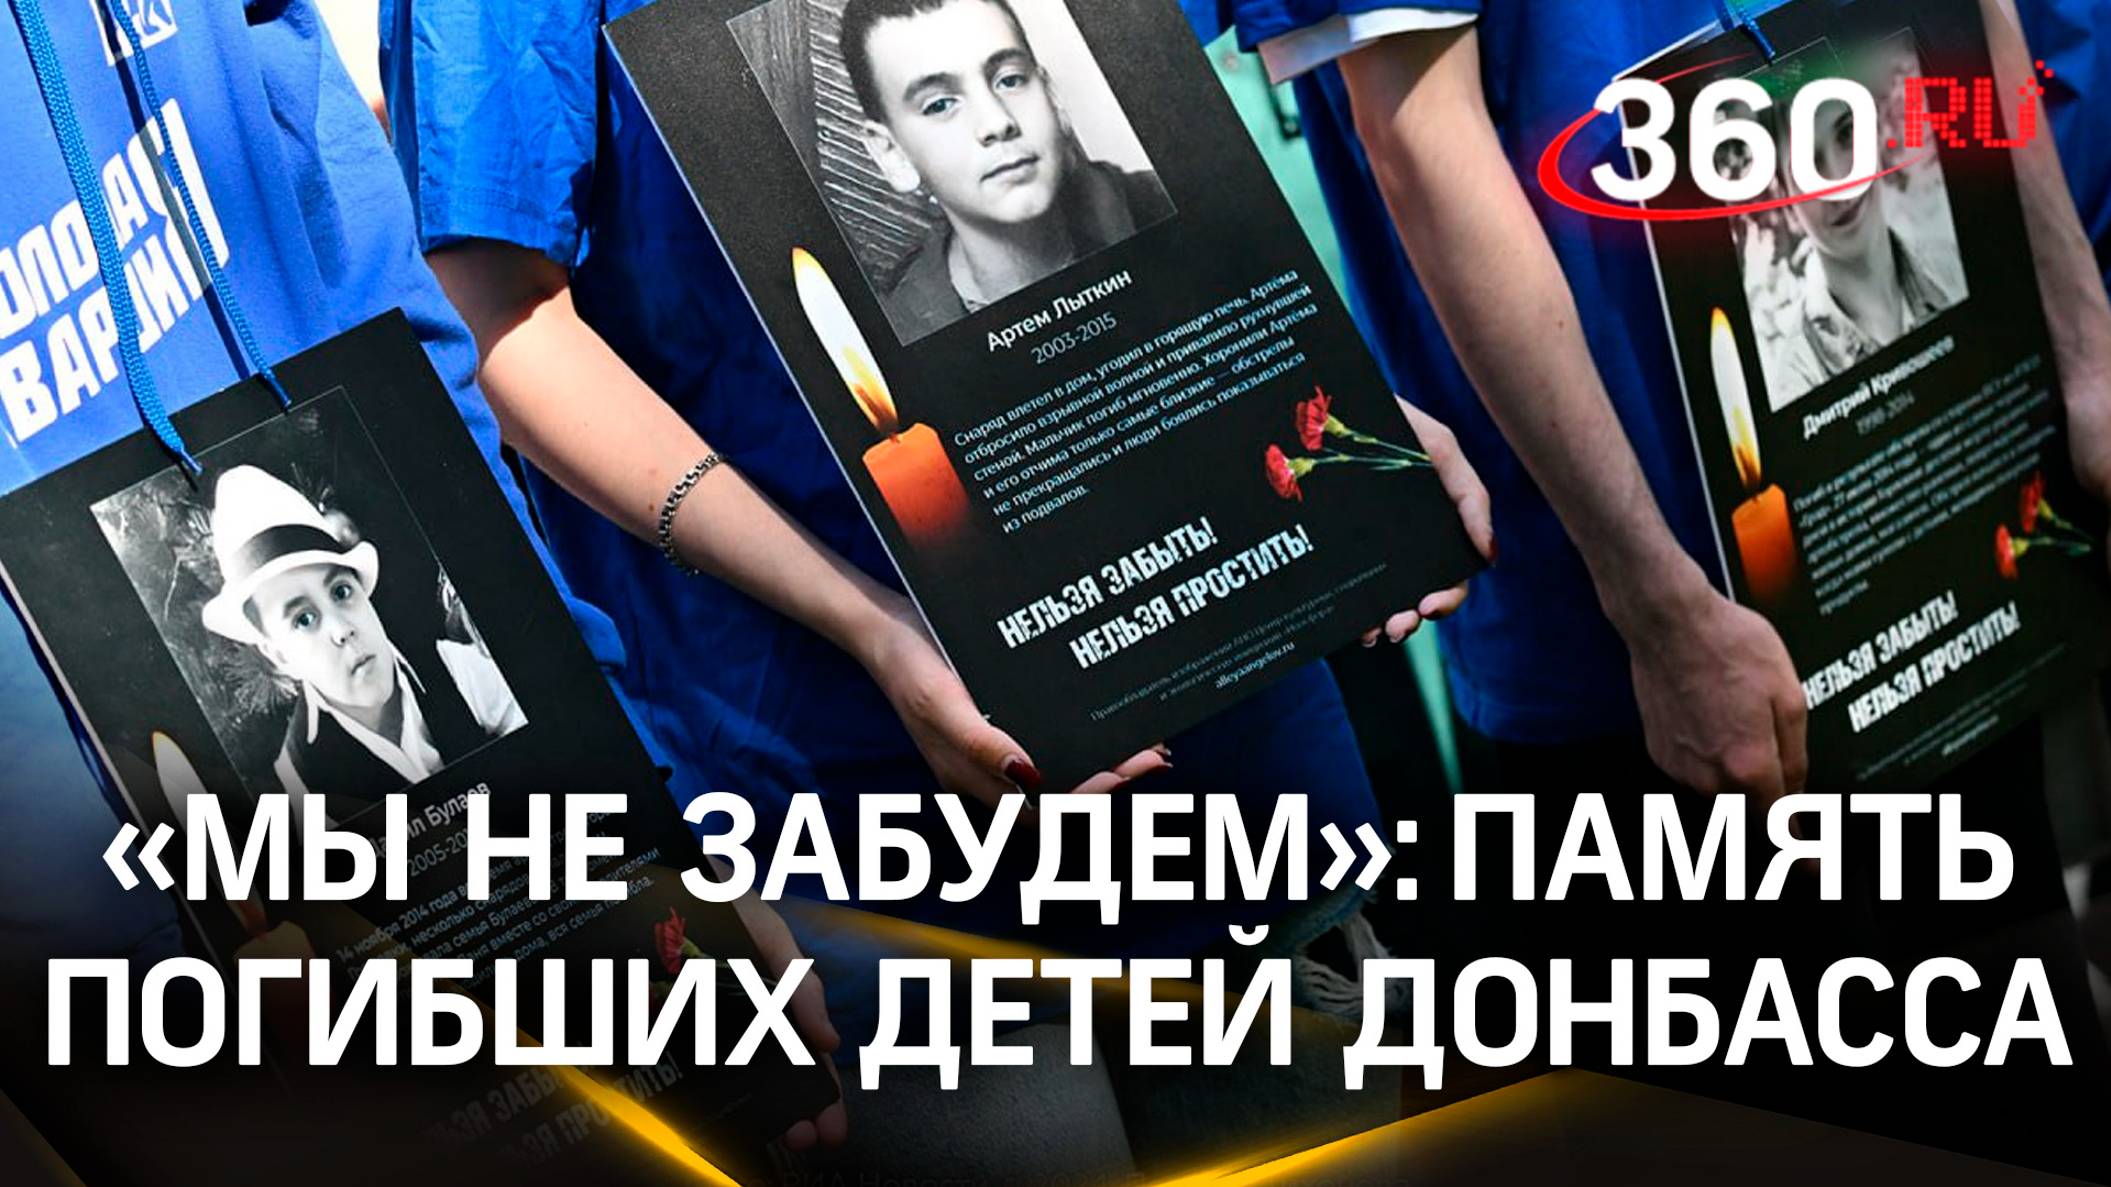 «Мы не забудем». Акция в память о погибших детях Донбасса прошла в Москве